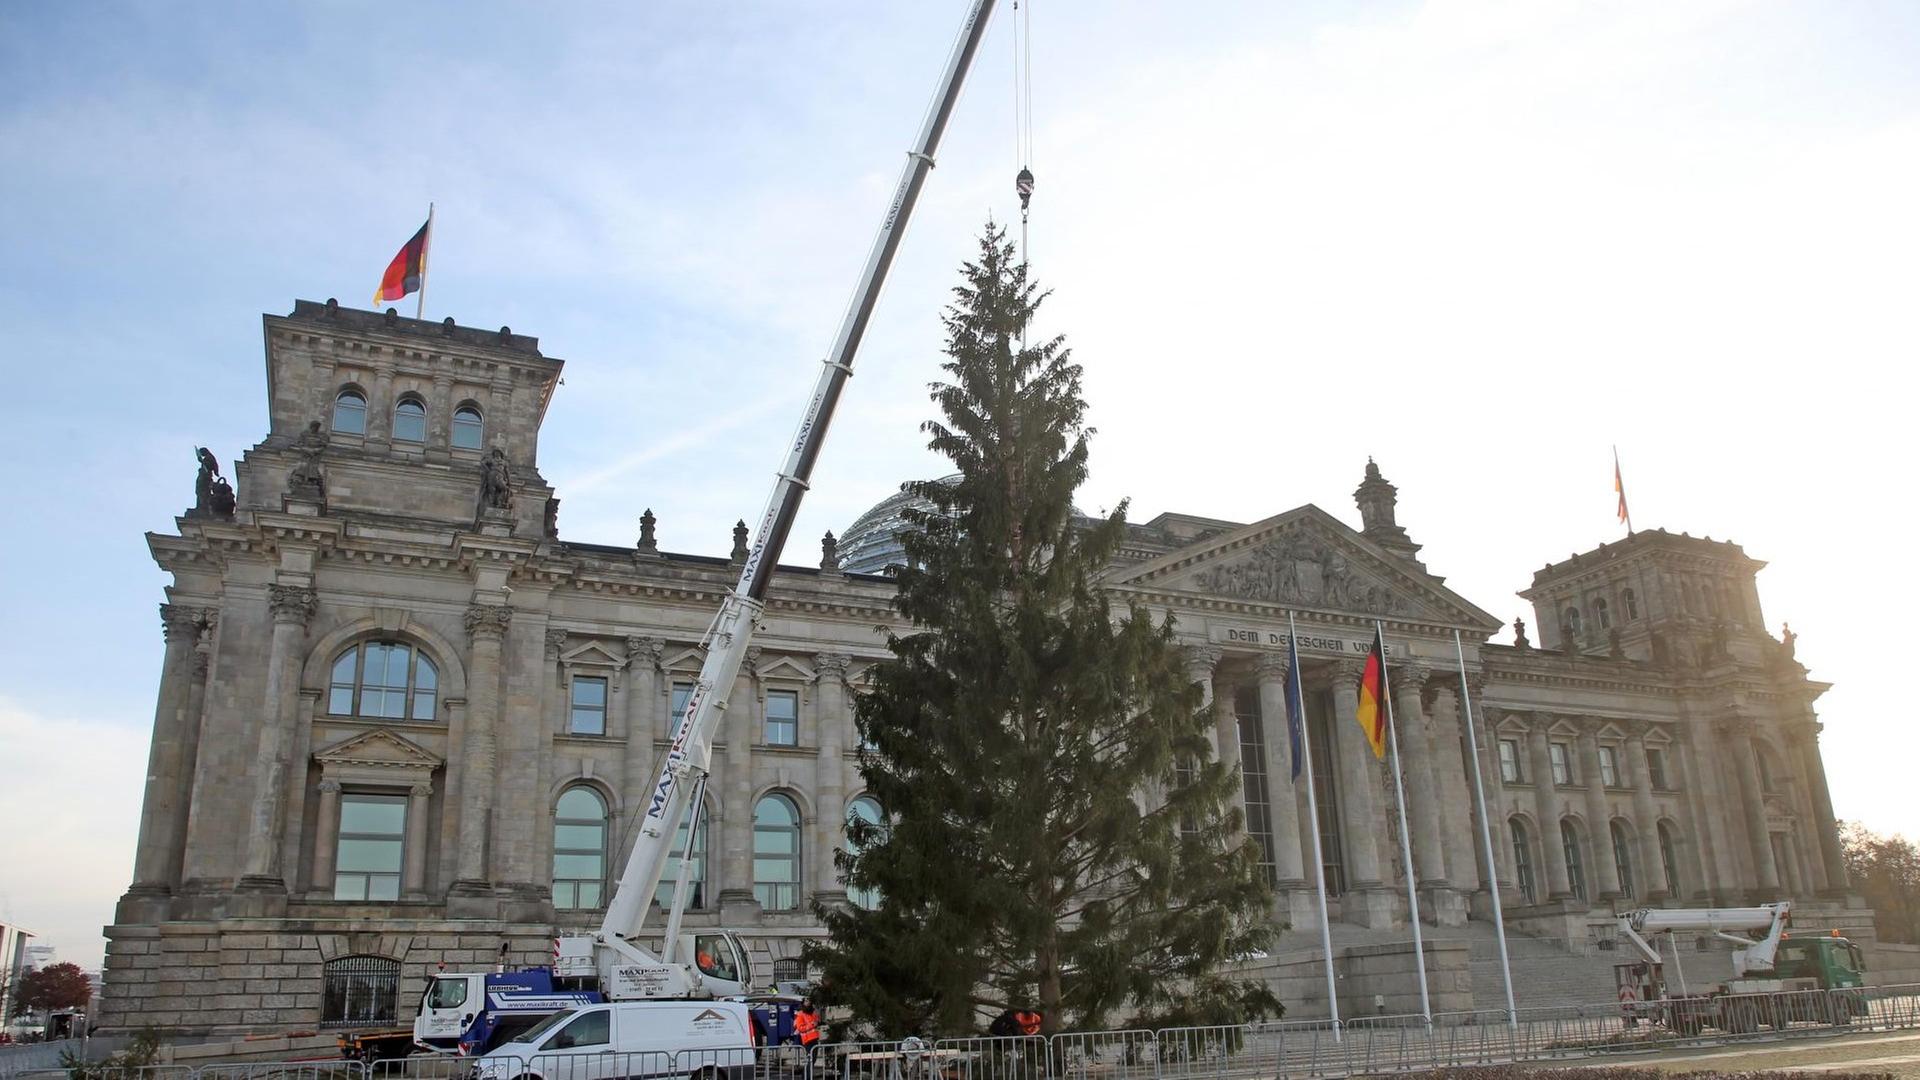 24.11.2020, Berlin: Mit einem Kran wird vor dem Reichstagsgebäude, dem Sitz des Deutschen Bundestages, der diesjährige Weihnachtsbaum aufgestellt. Foto: Wolfgang Kumm/dpa | Verwendung weltweit